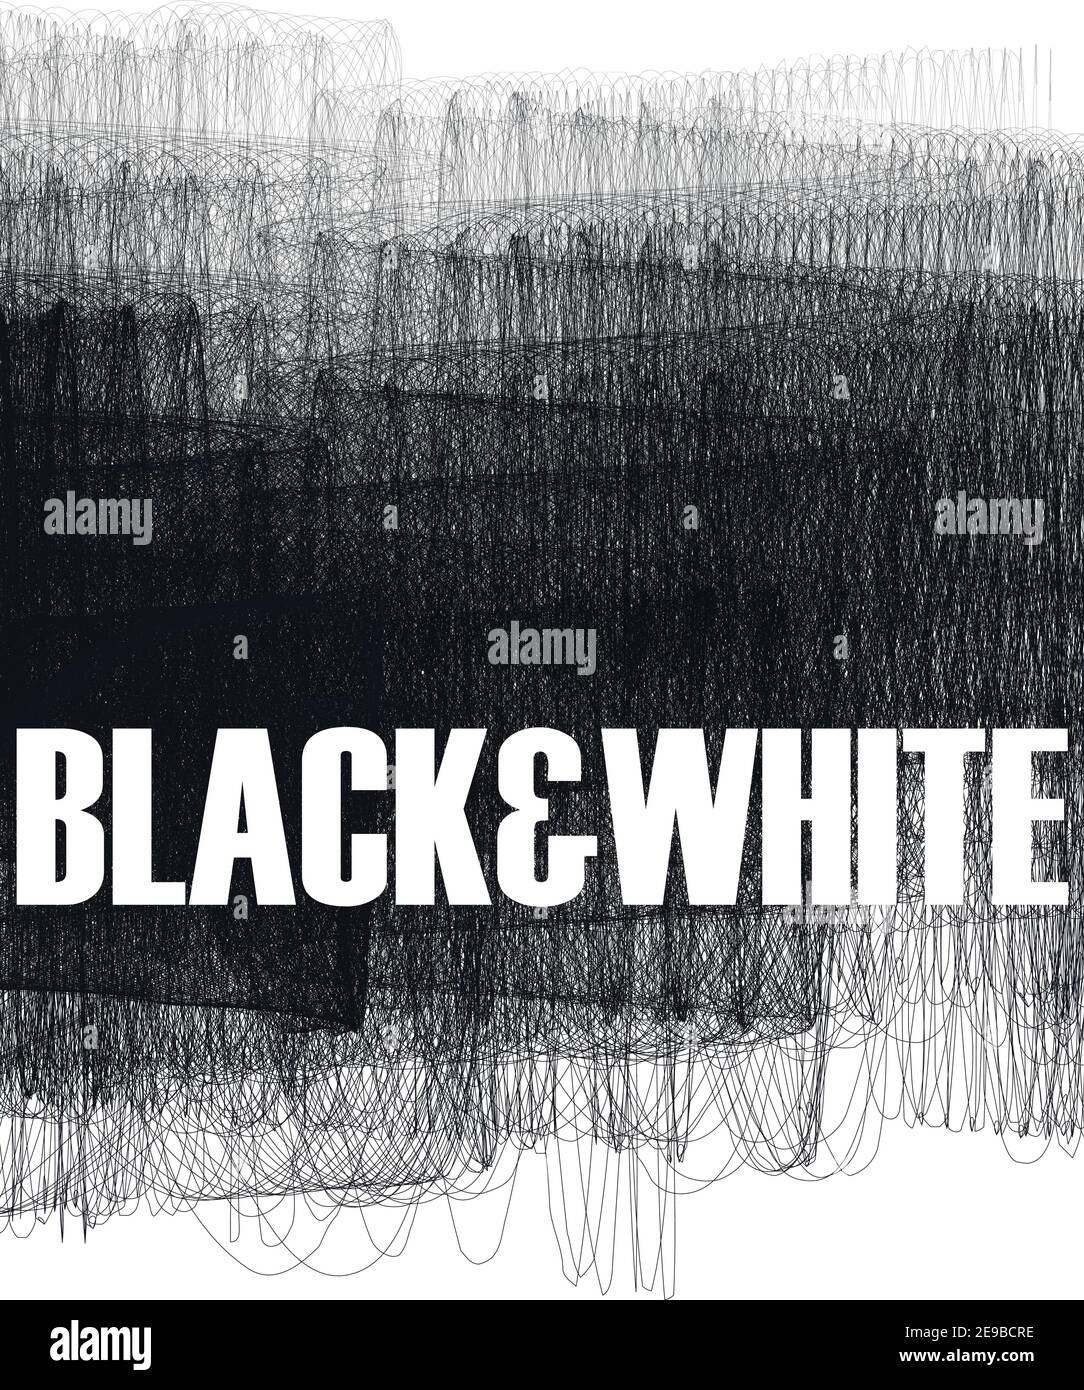 Abstrakter schwarz-weiß schattierter Hintergrund. Vektorgrafik Muster von dünnen Linien Stock Vektor